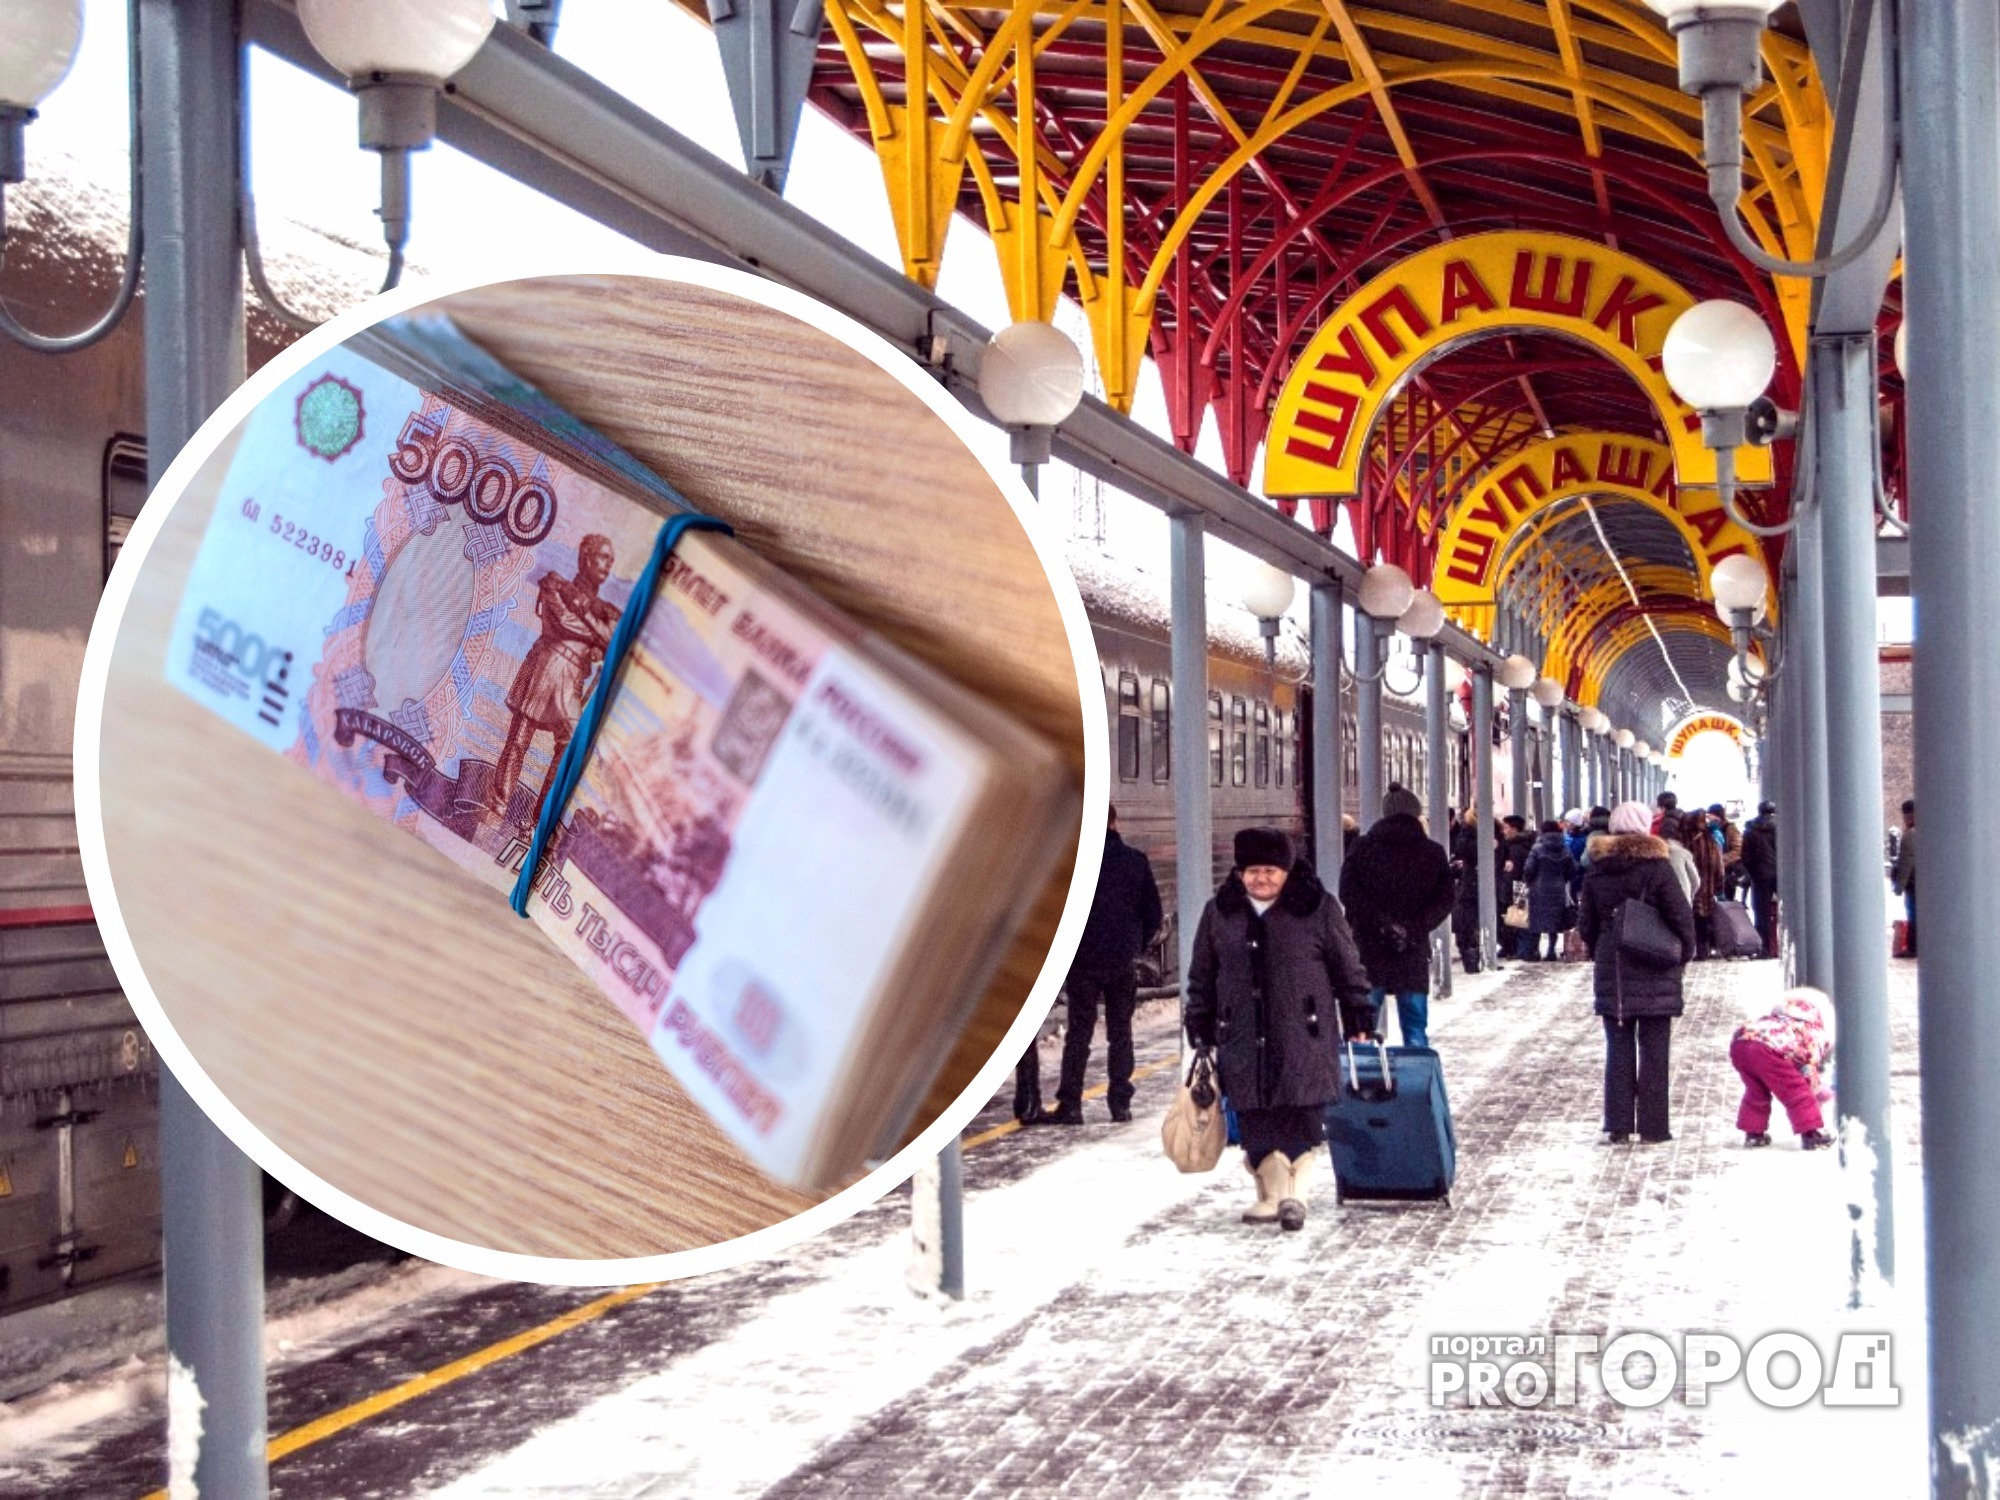 В Чебоксарах мужчина поднял на вокзале 5 тысяч рублей и попал под следствие